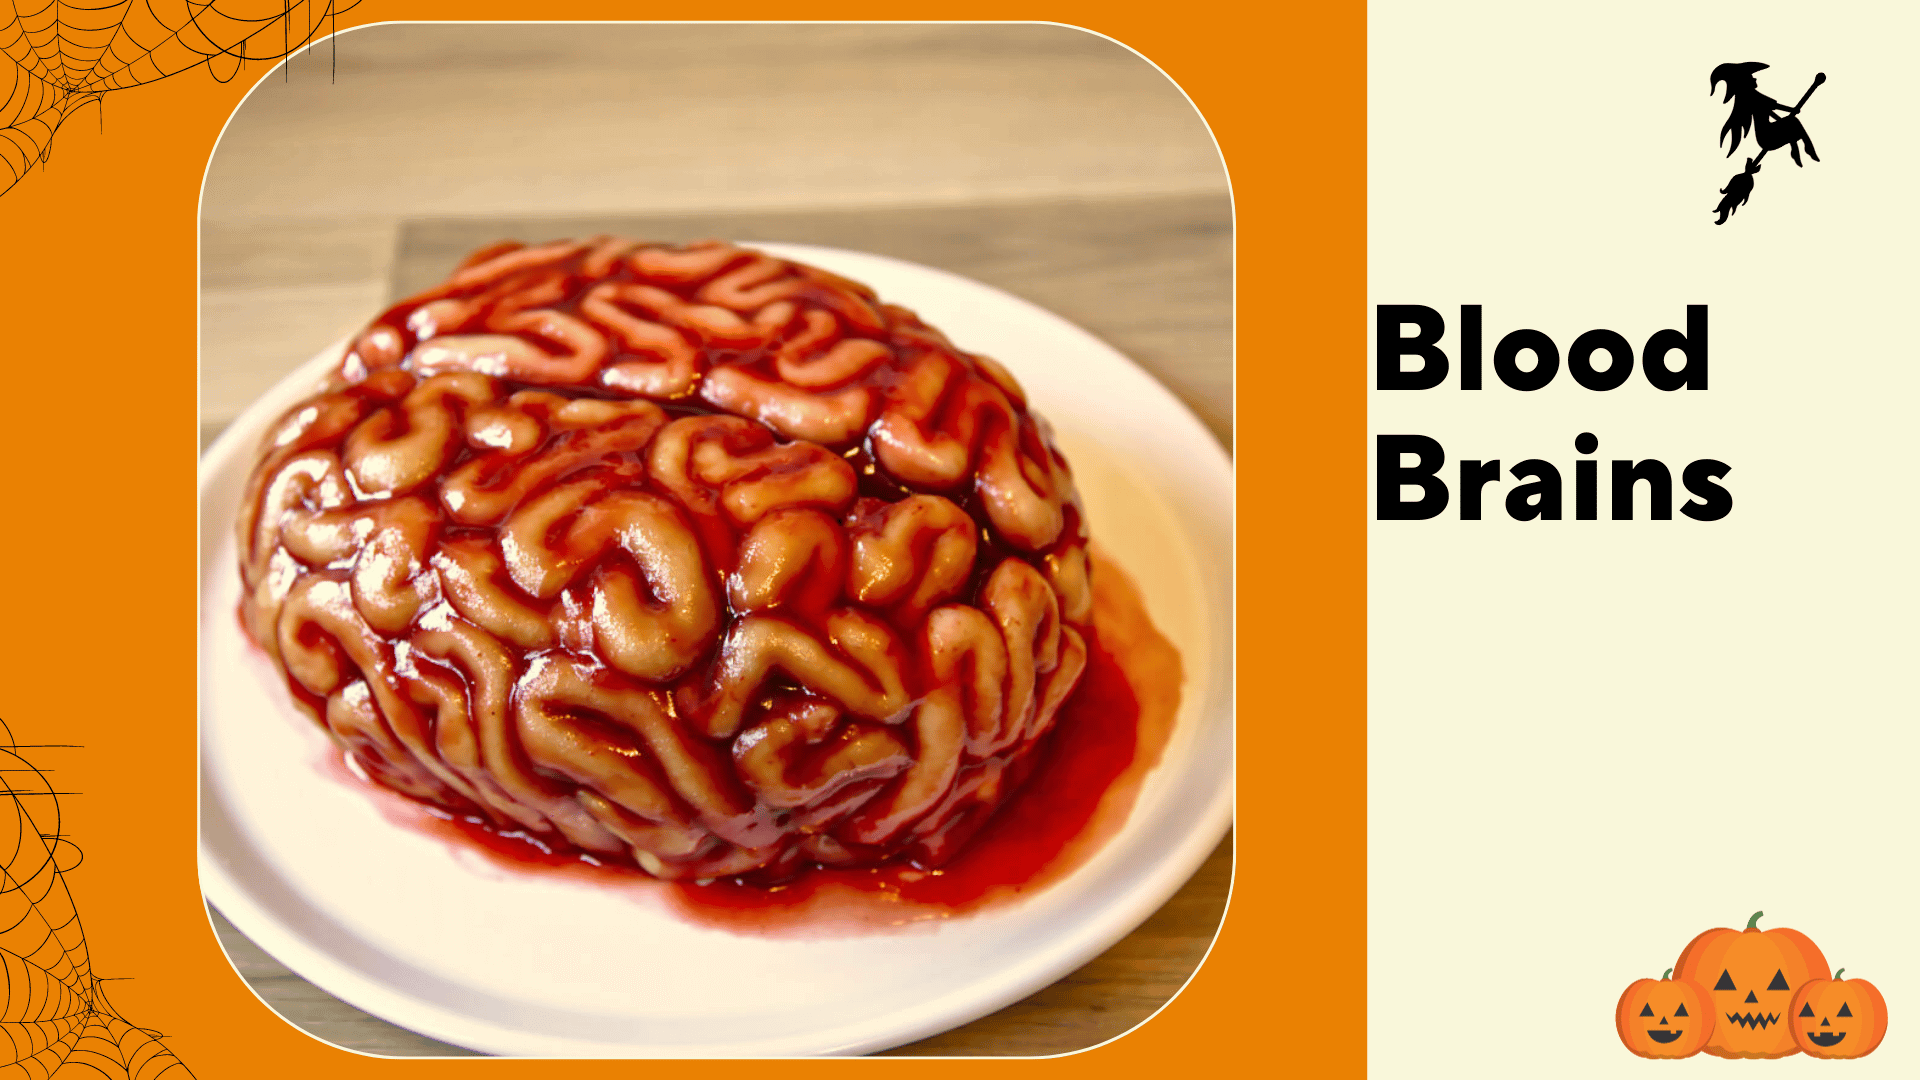 Blood Brains